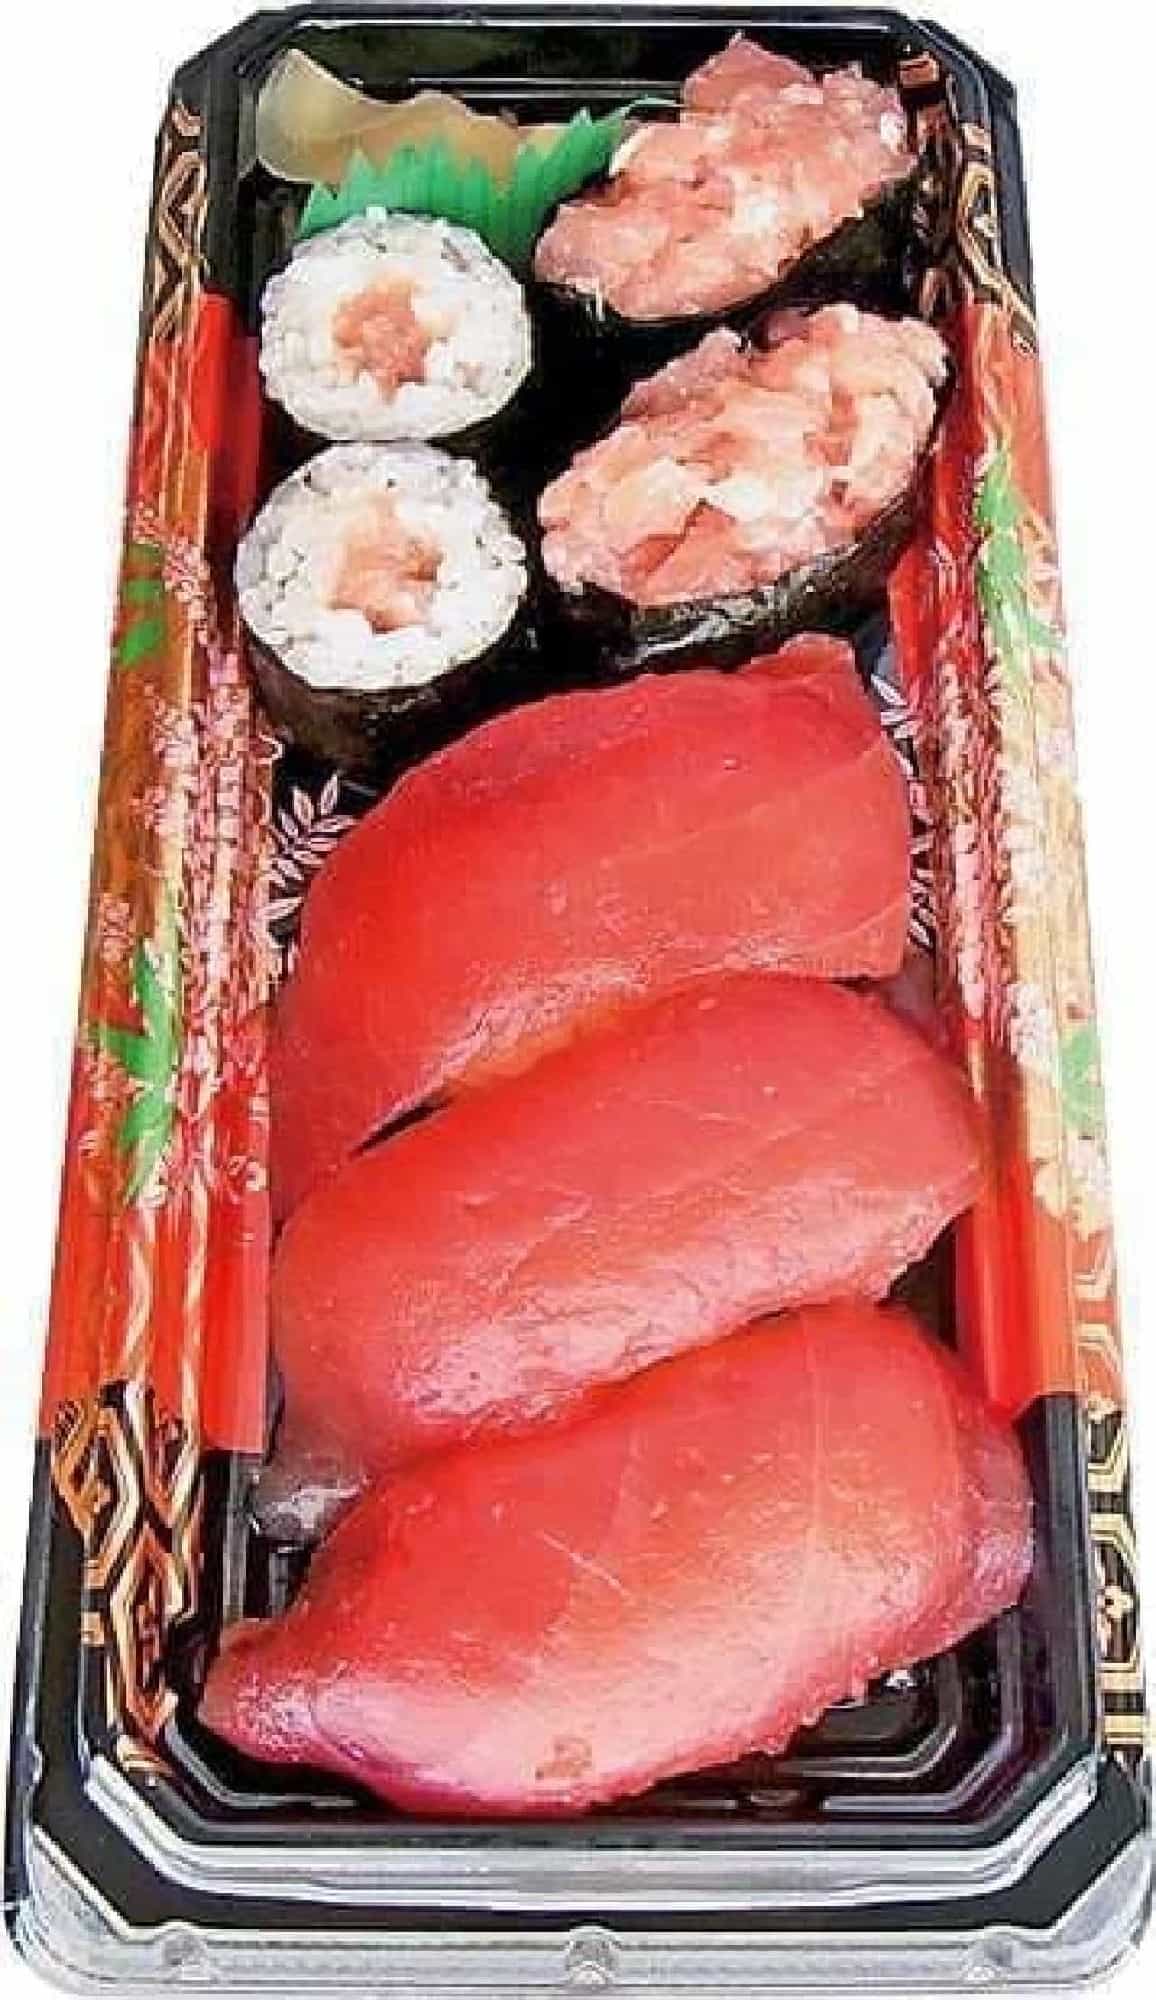 Lawson's "Tuna Tsukushi"